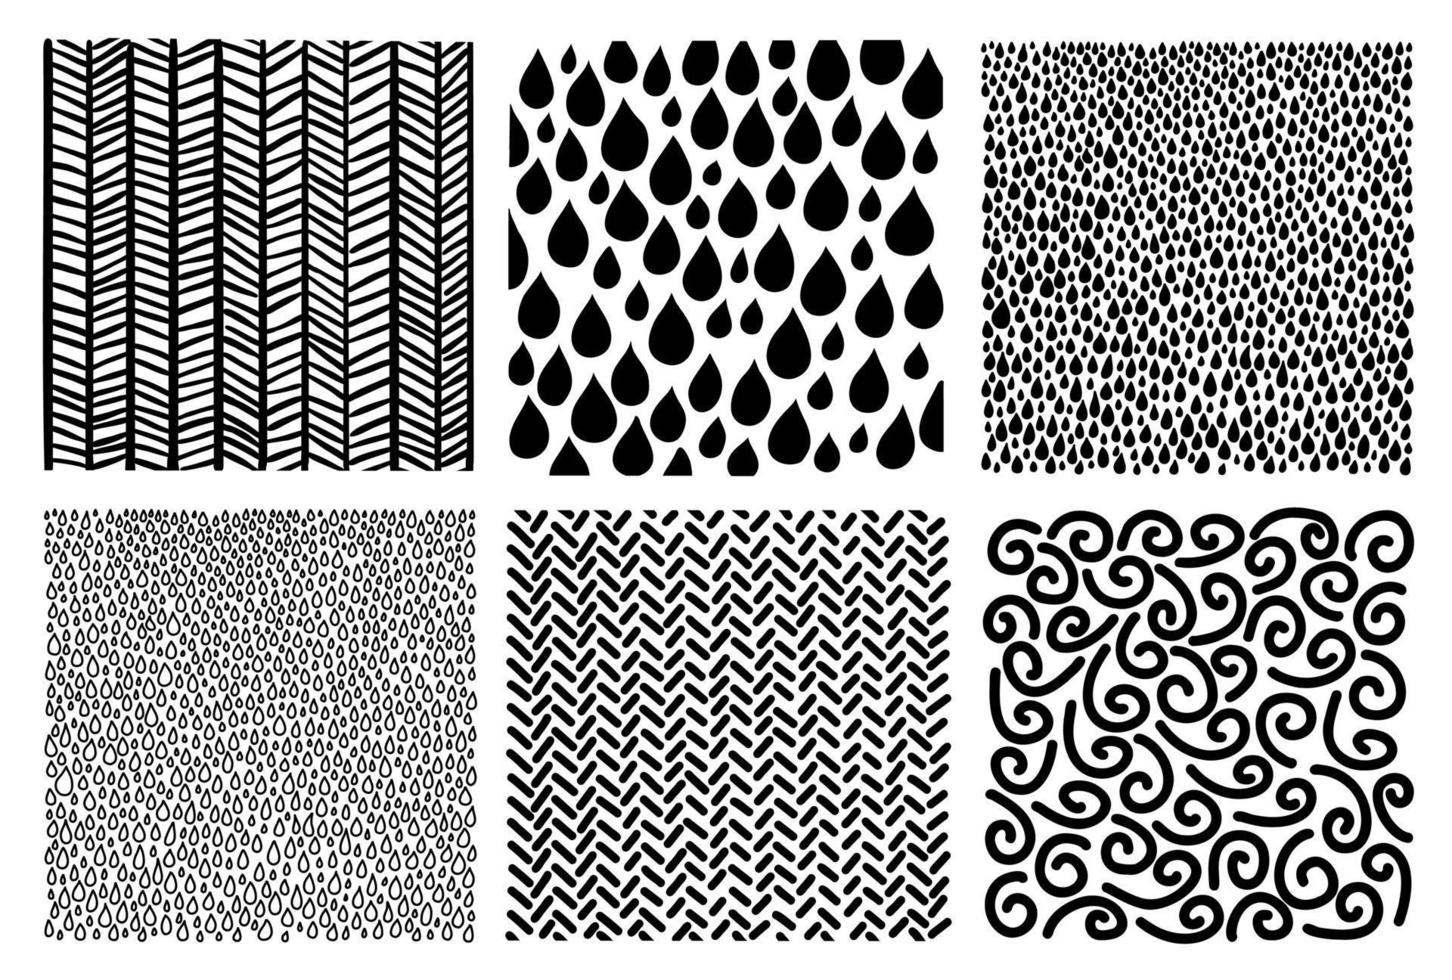 abstrakt hand dragen geometrisk enkel minimalistisk mönster uppsättning. droppar, Ränder, rader, krumlar, slumpmässig symboler texturer. vektor illustration